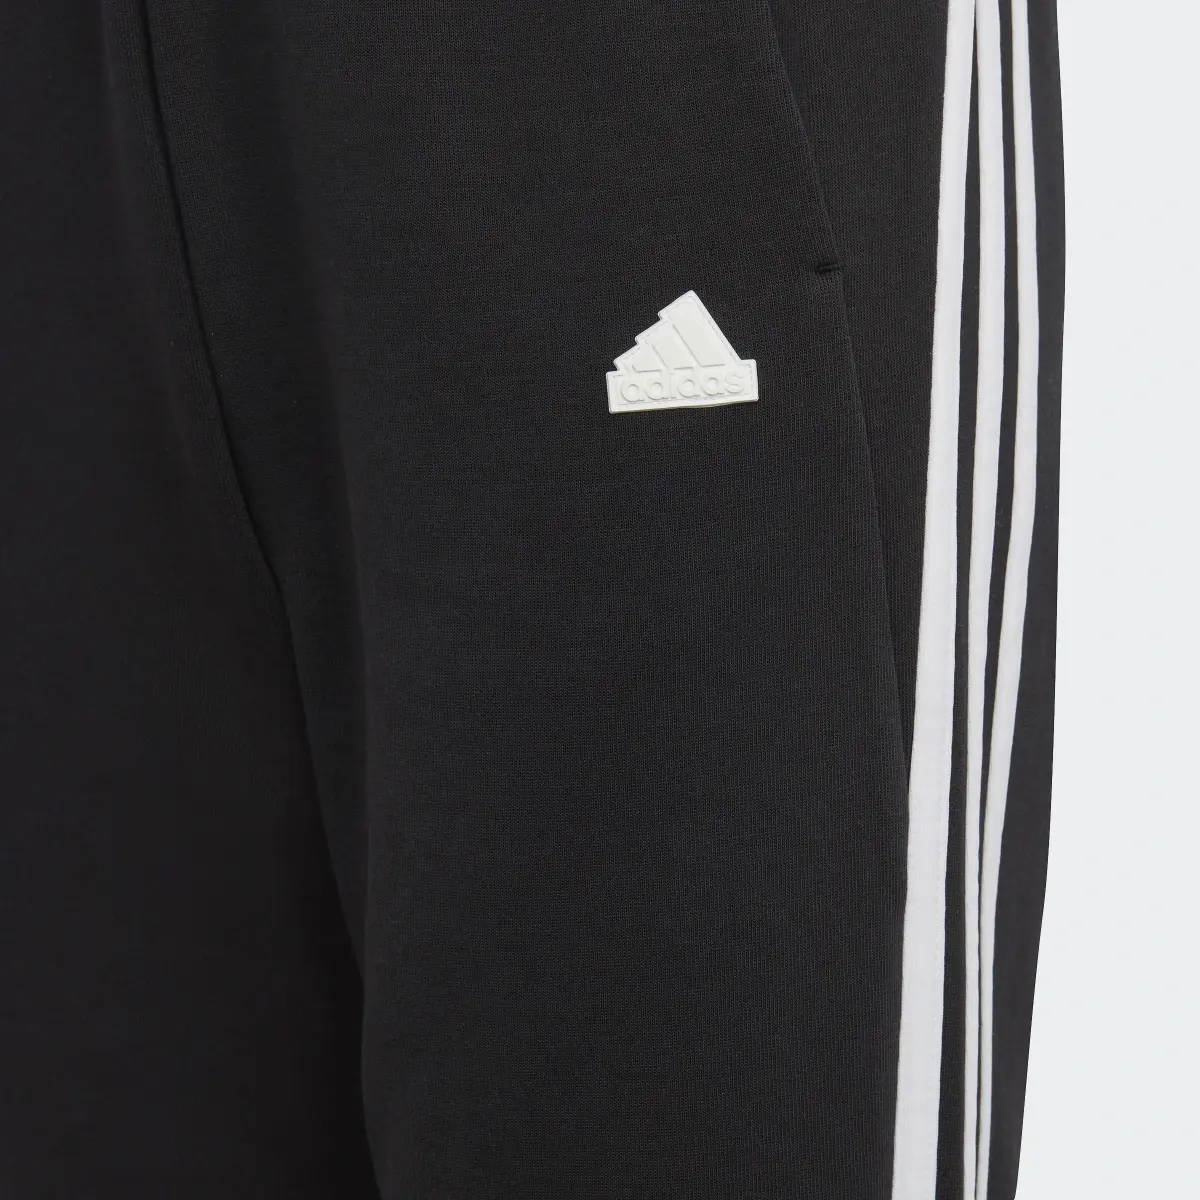 Adidas Future Icons 3-Stripes Cotton Eşofman Altı. 3